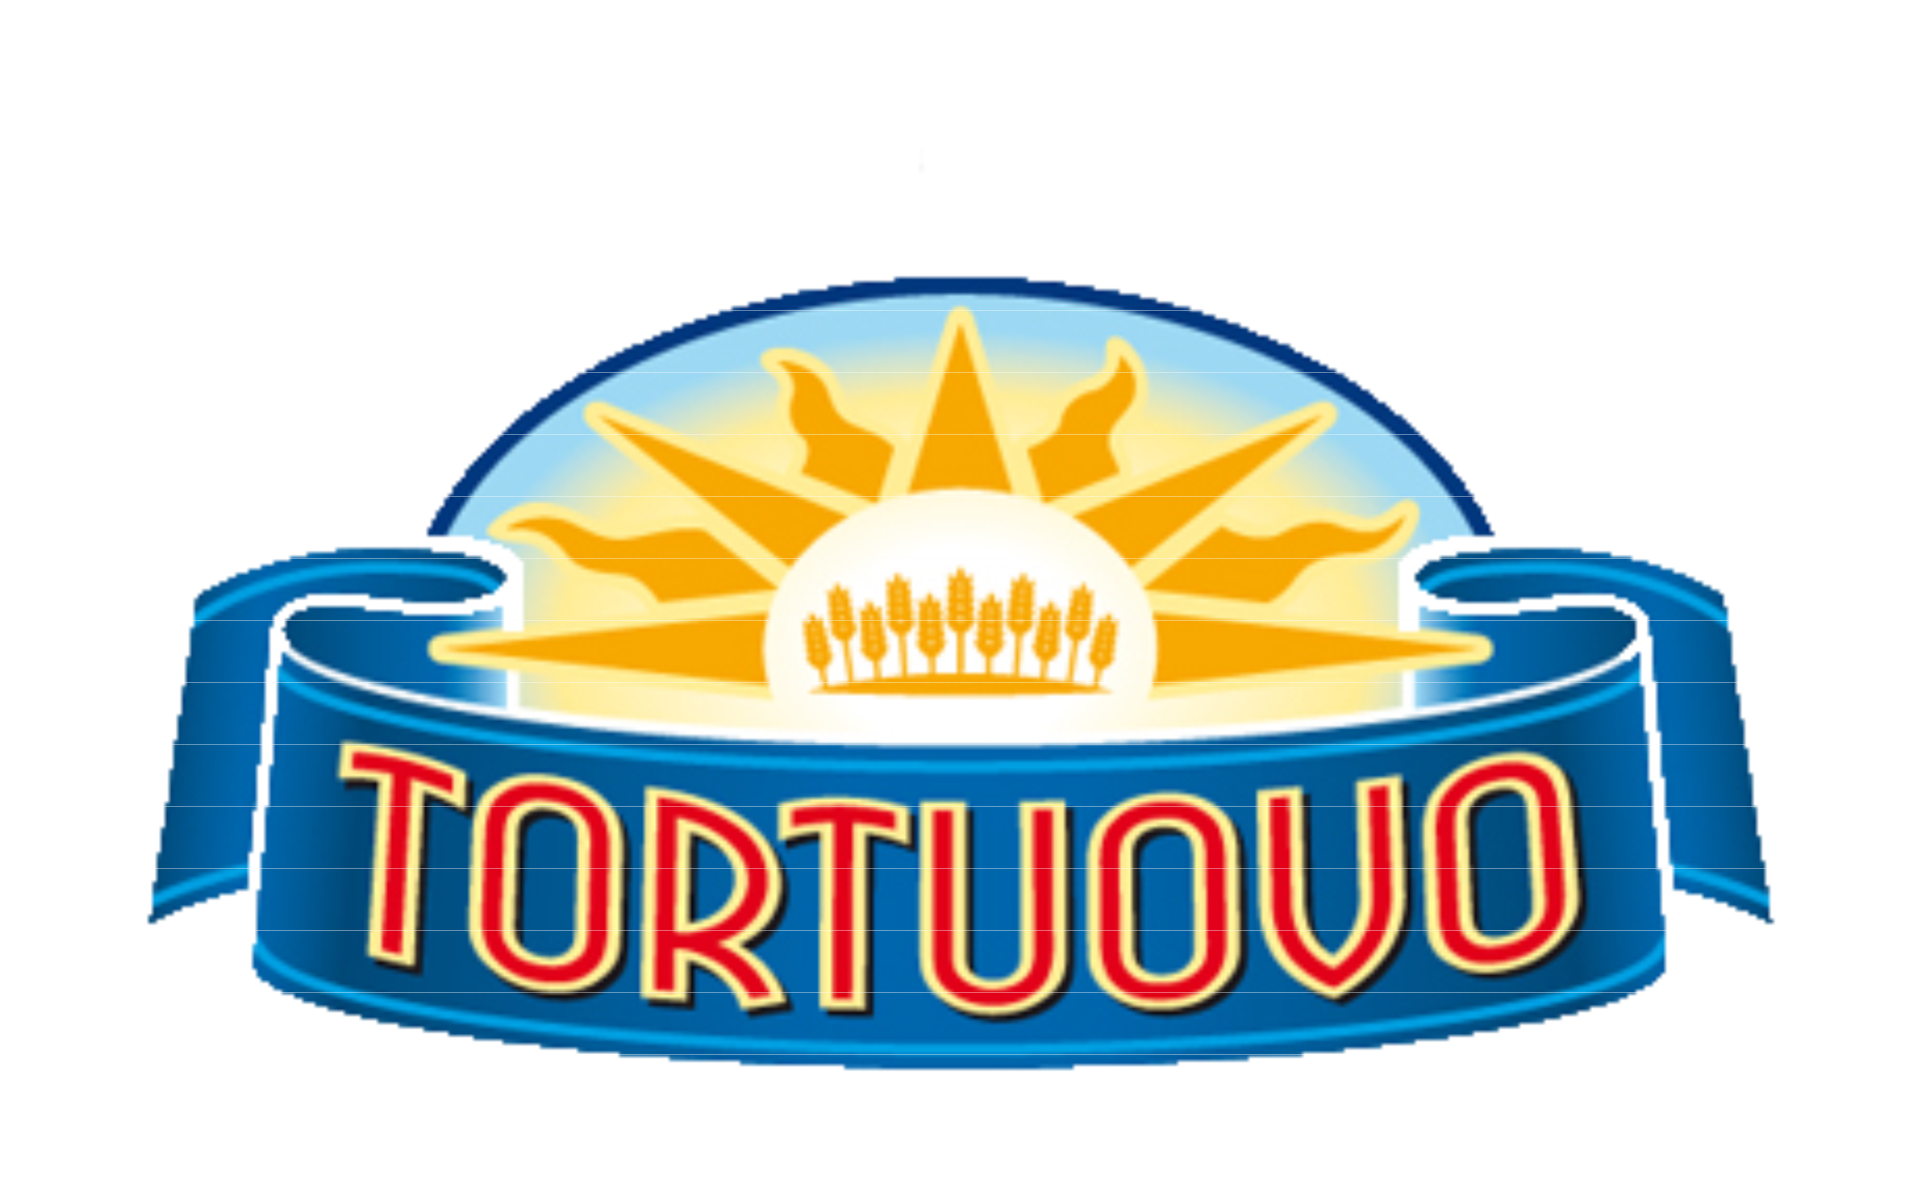 Tortuovo